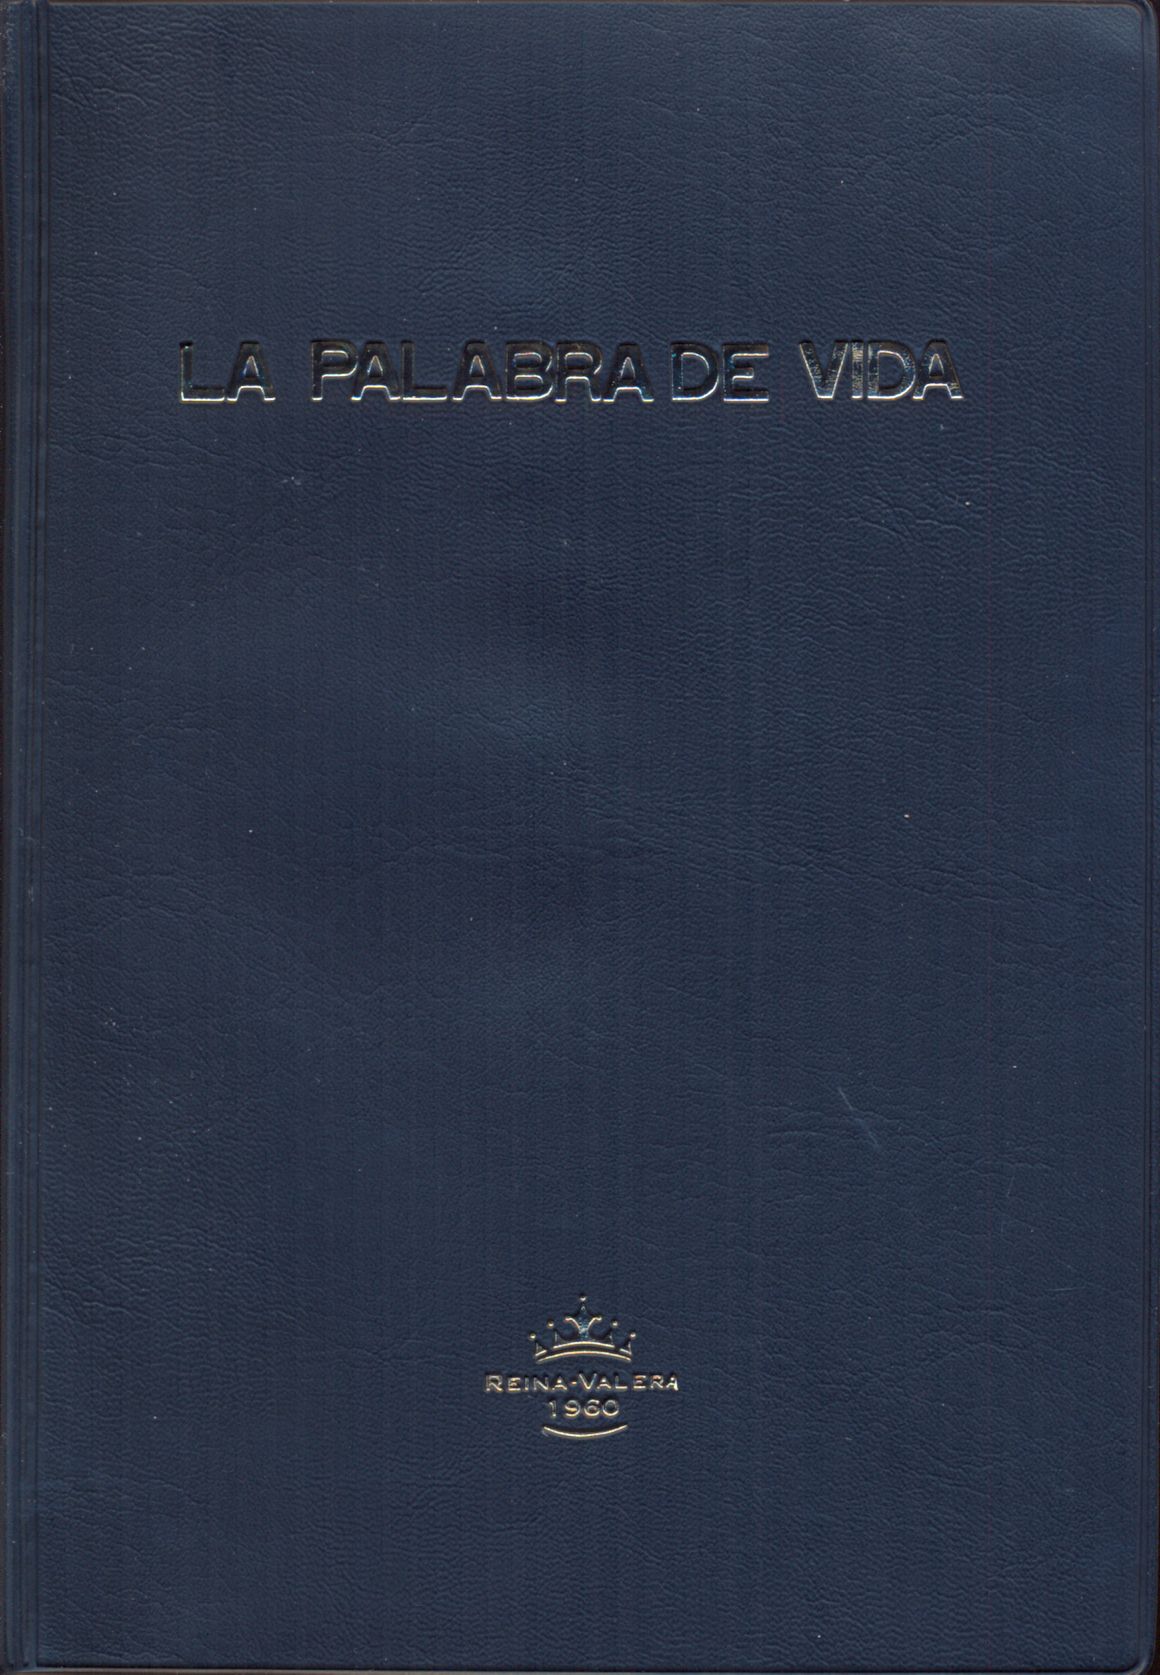 Spanisch, Neues Testament Palabra Vida, Grosschrift